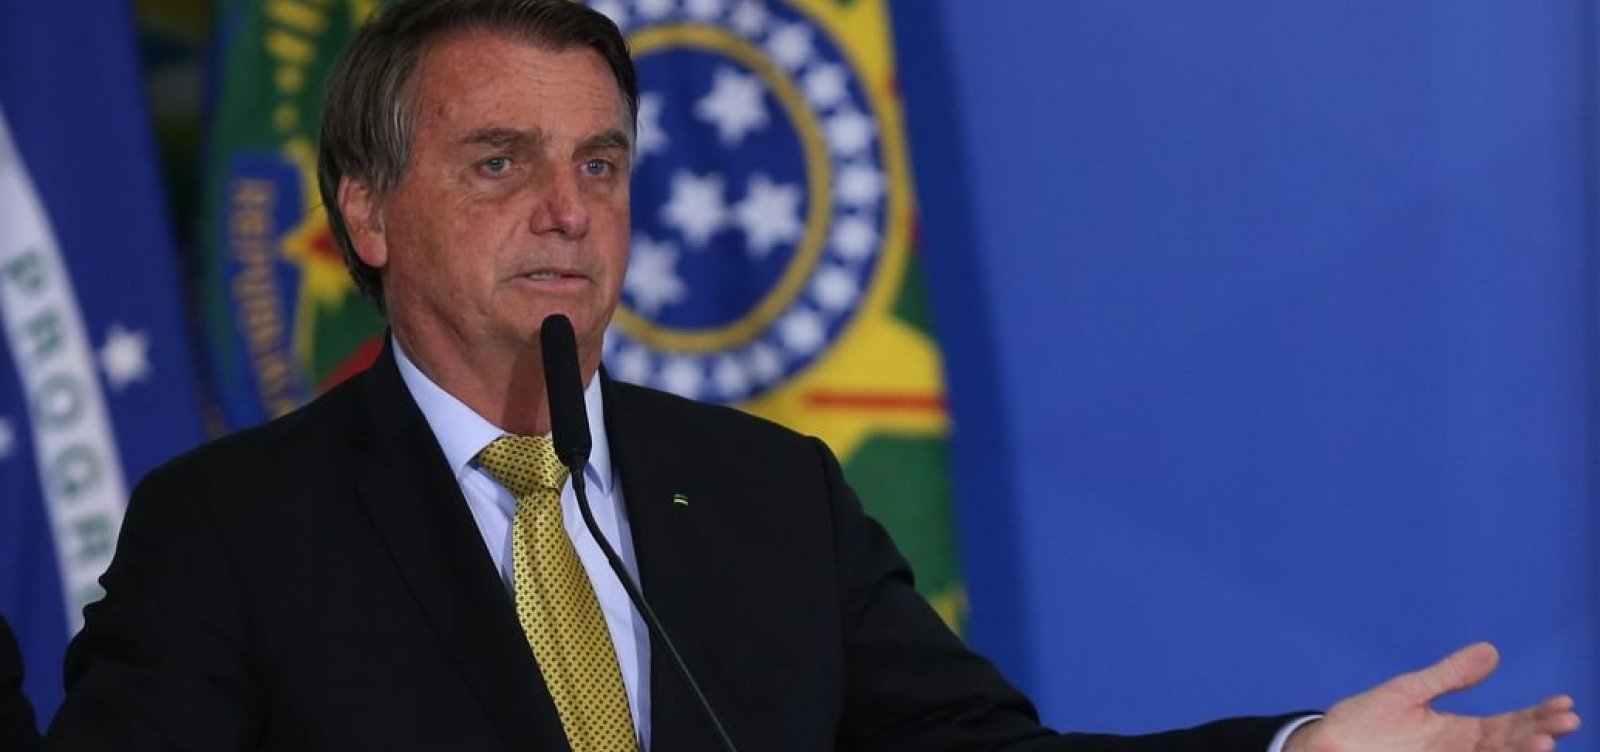 Gastos de cartões corporativos do governo Bolsonaro são divulgados